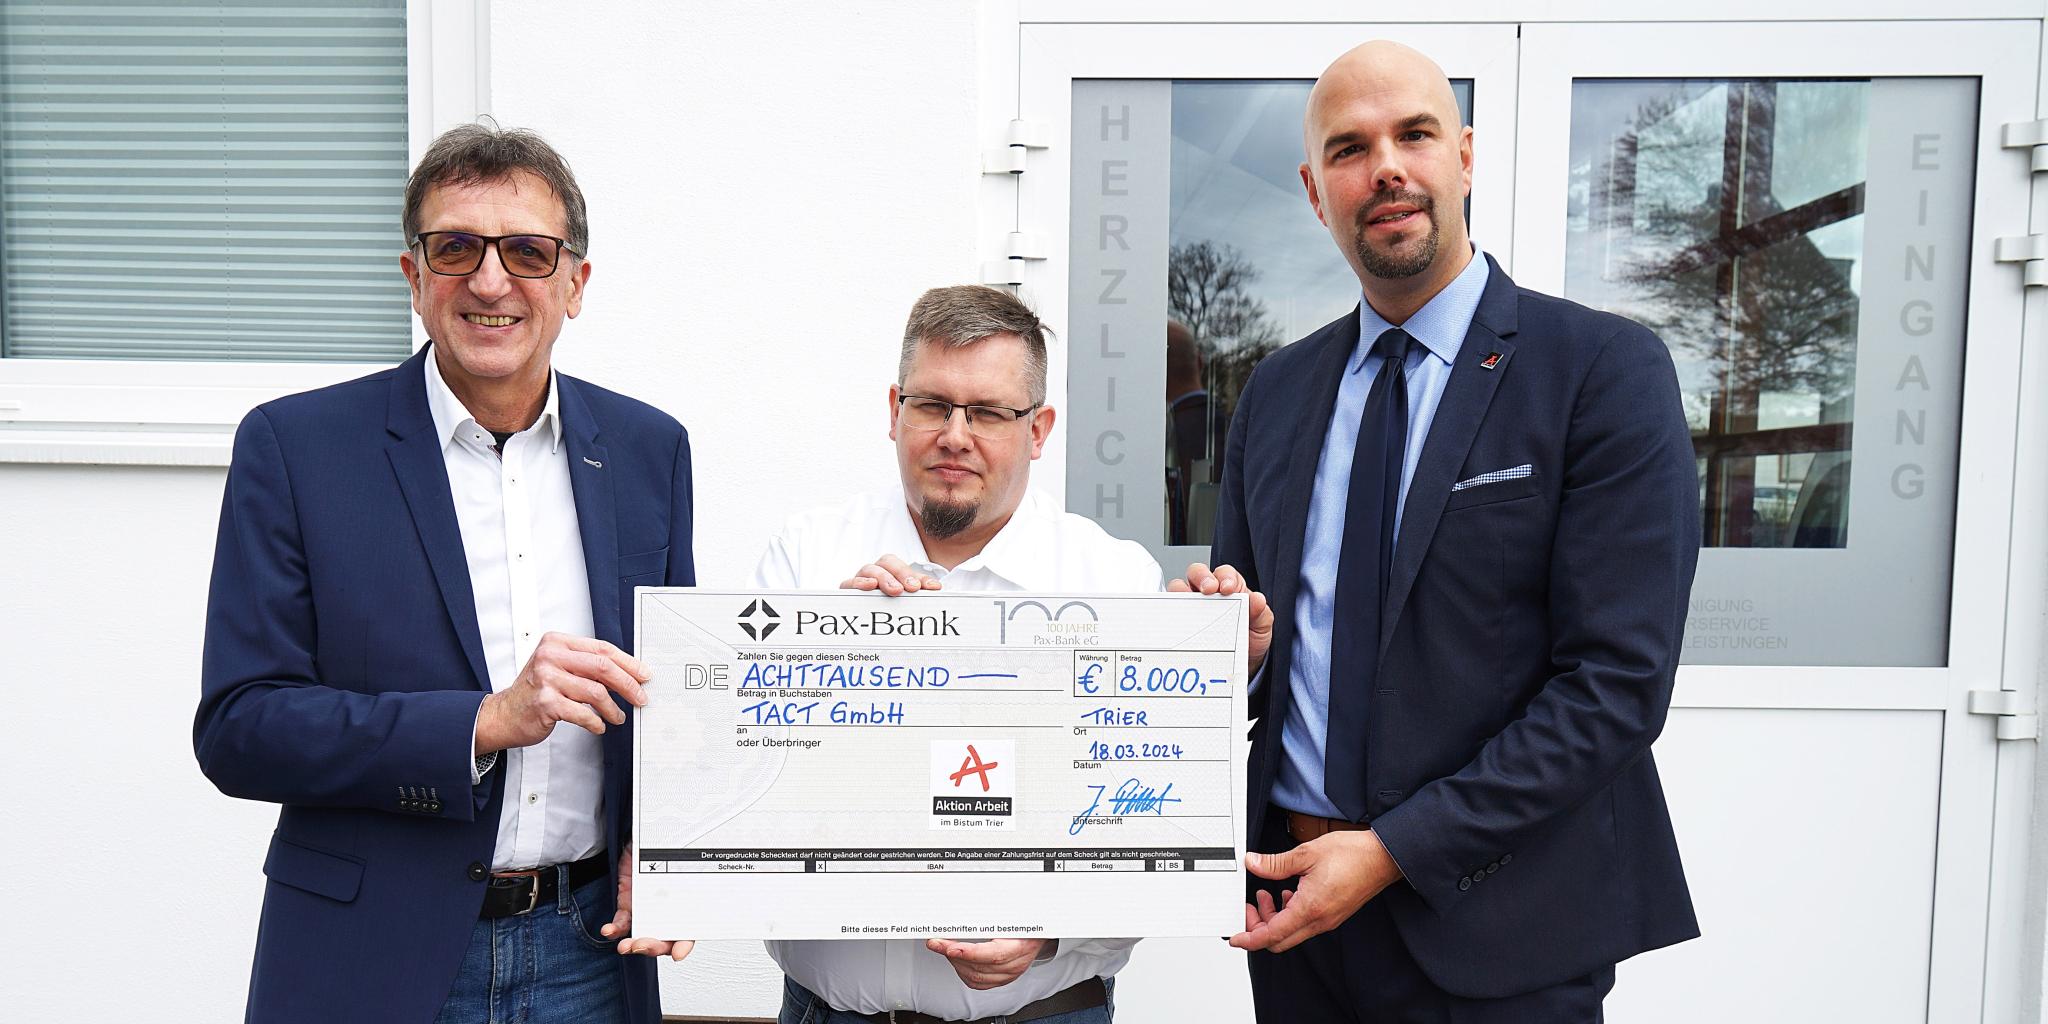 Johannes Tittel, Geschäftsführer der Aktion Arbeit (rechts im Bild) übergibt den Spendenscheck an TACT-Gesamtbetriebsleiter Cris Schlennstedt (Mitte) und TACT-Geschäftsführer Detlef Böhm.